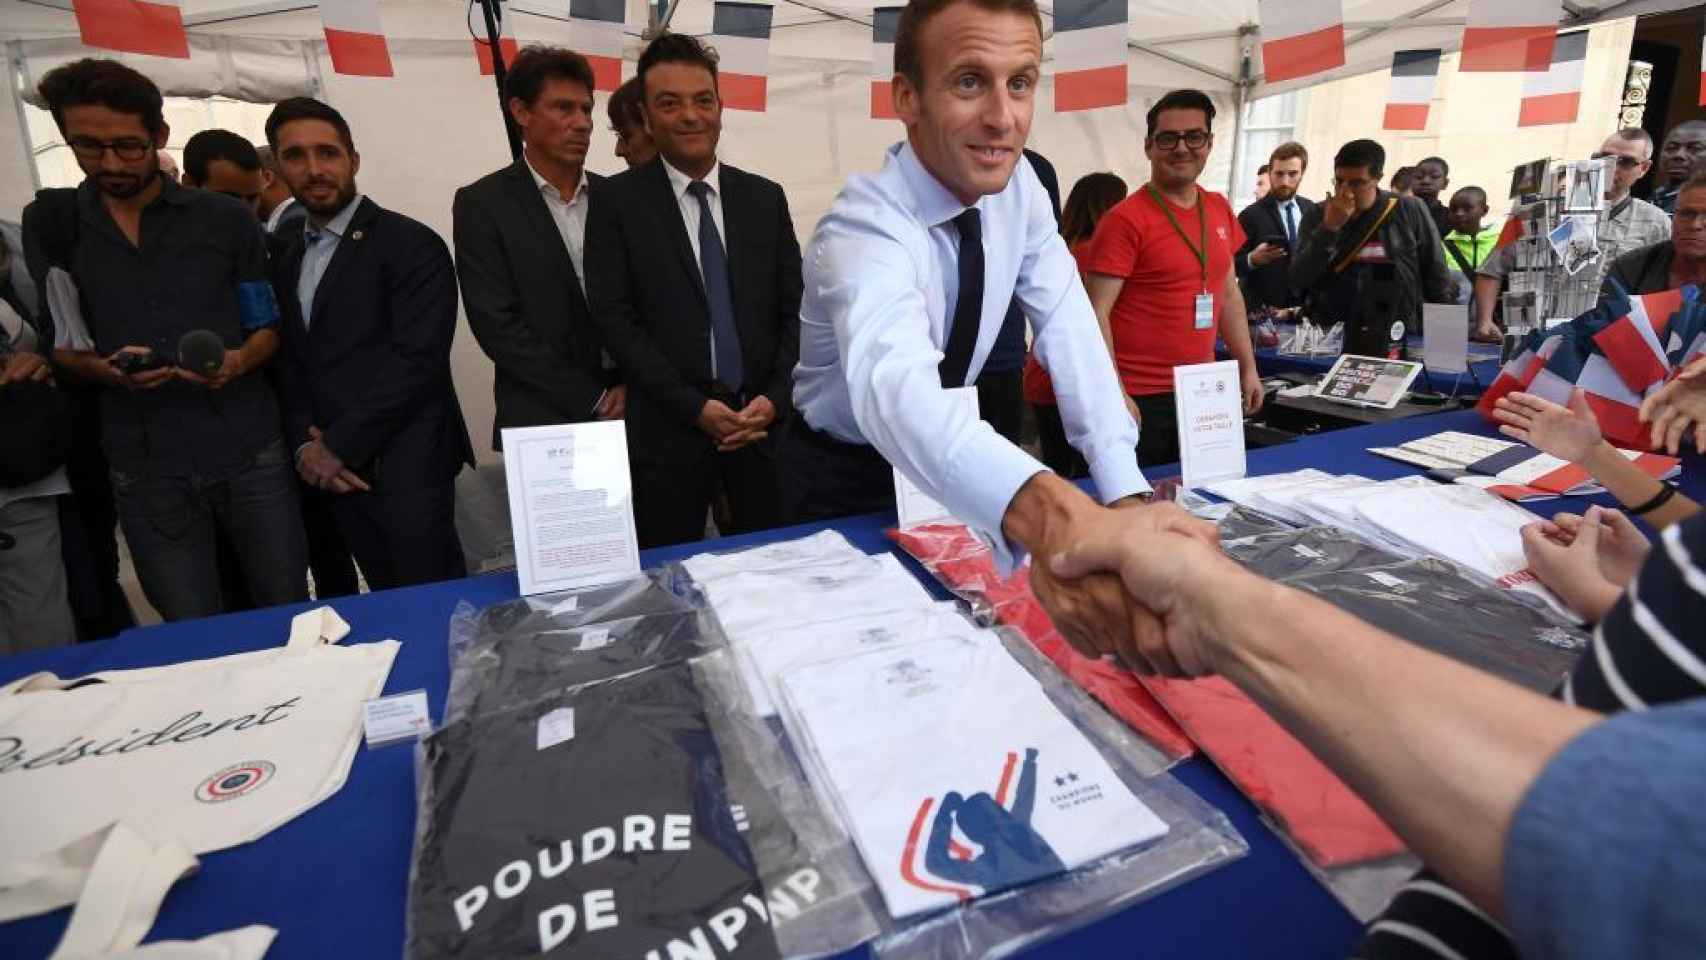 Emmanuel Macron, presidente de Francia, durante las jornadas de puertas abiertas en el Elíseo.